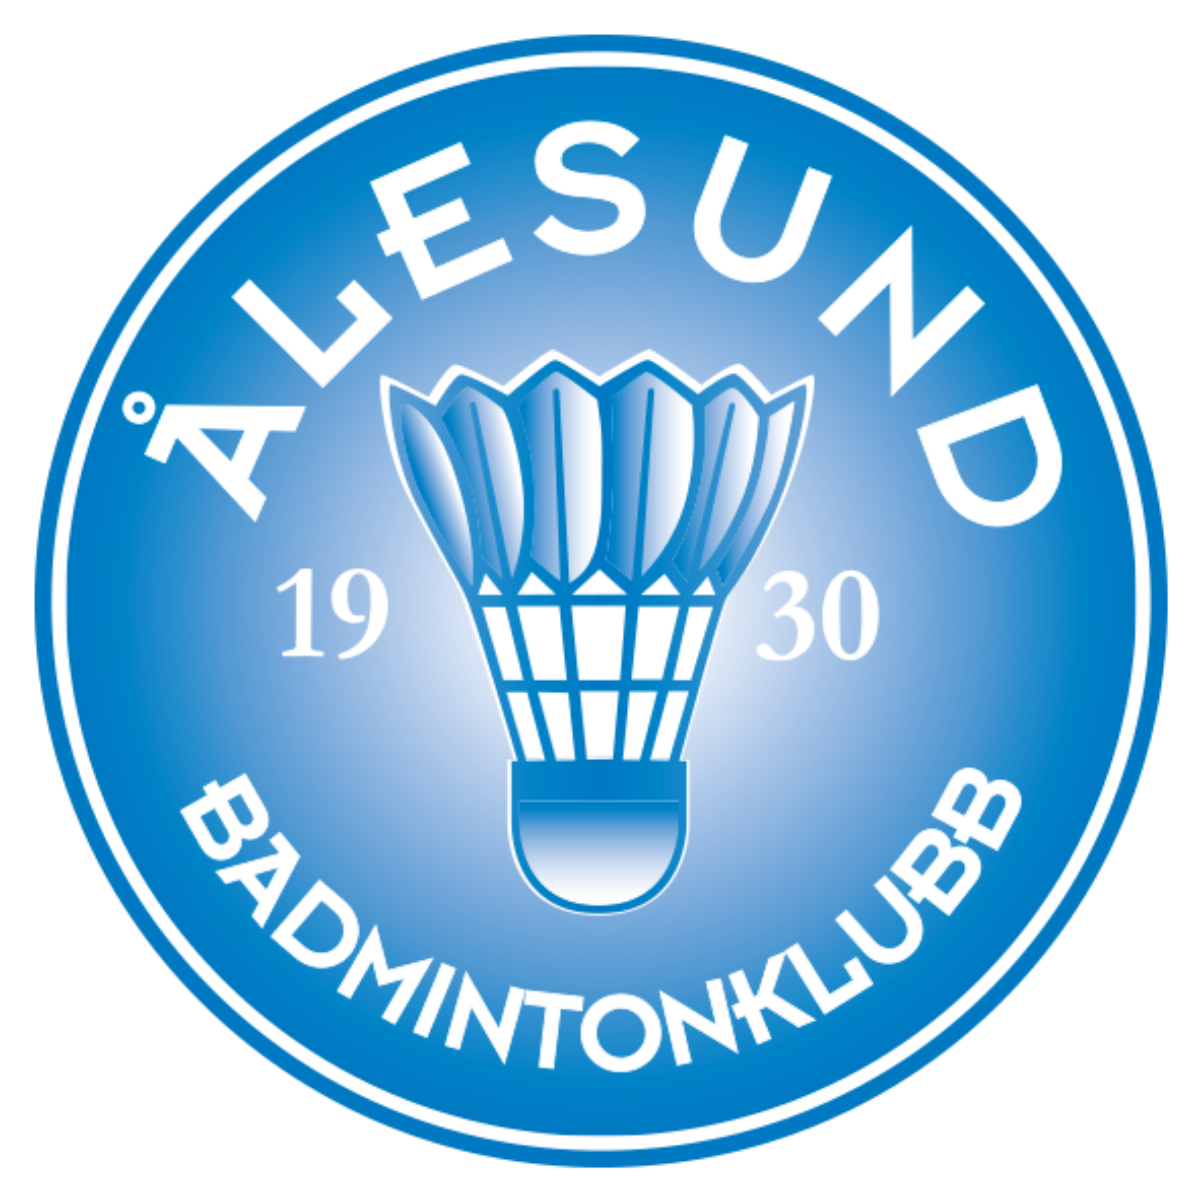 Ålesund badmintonklubb